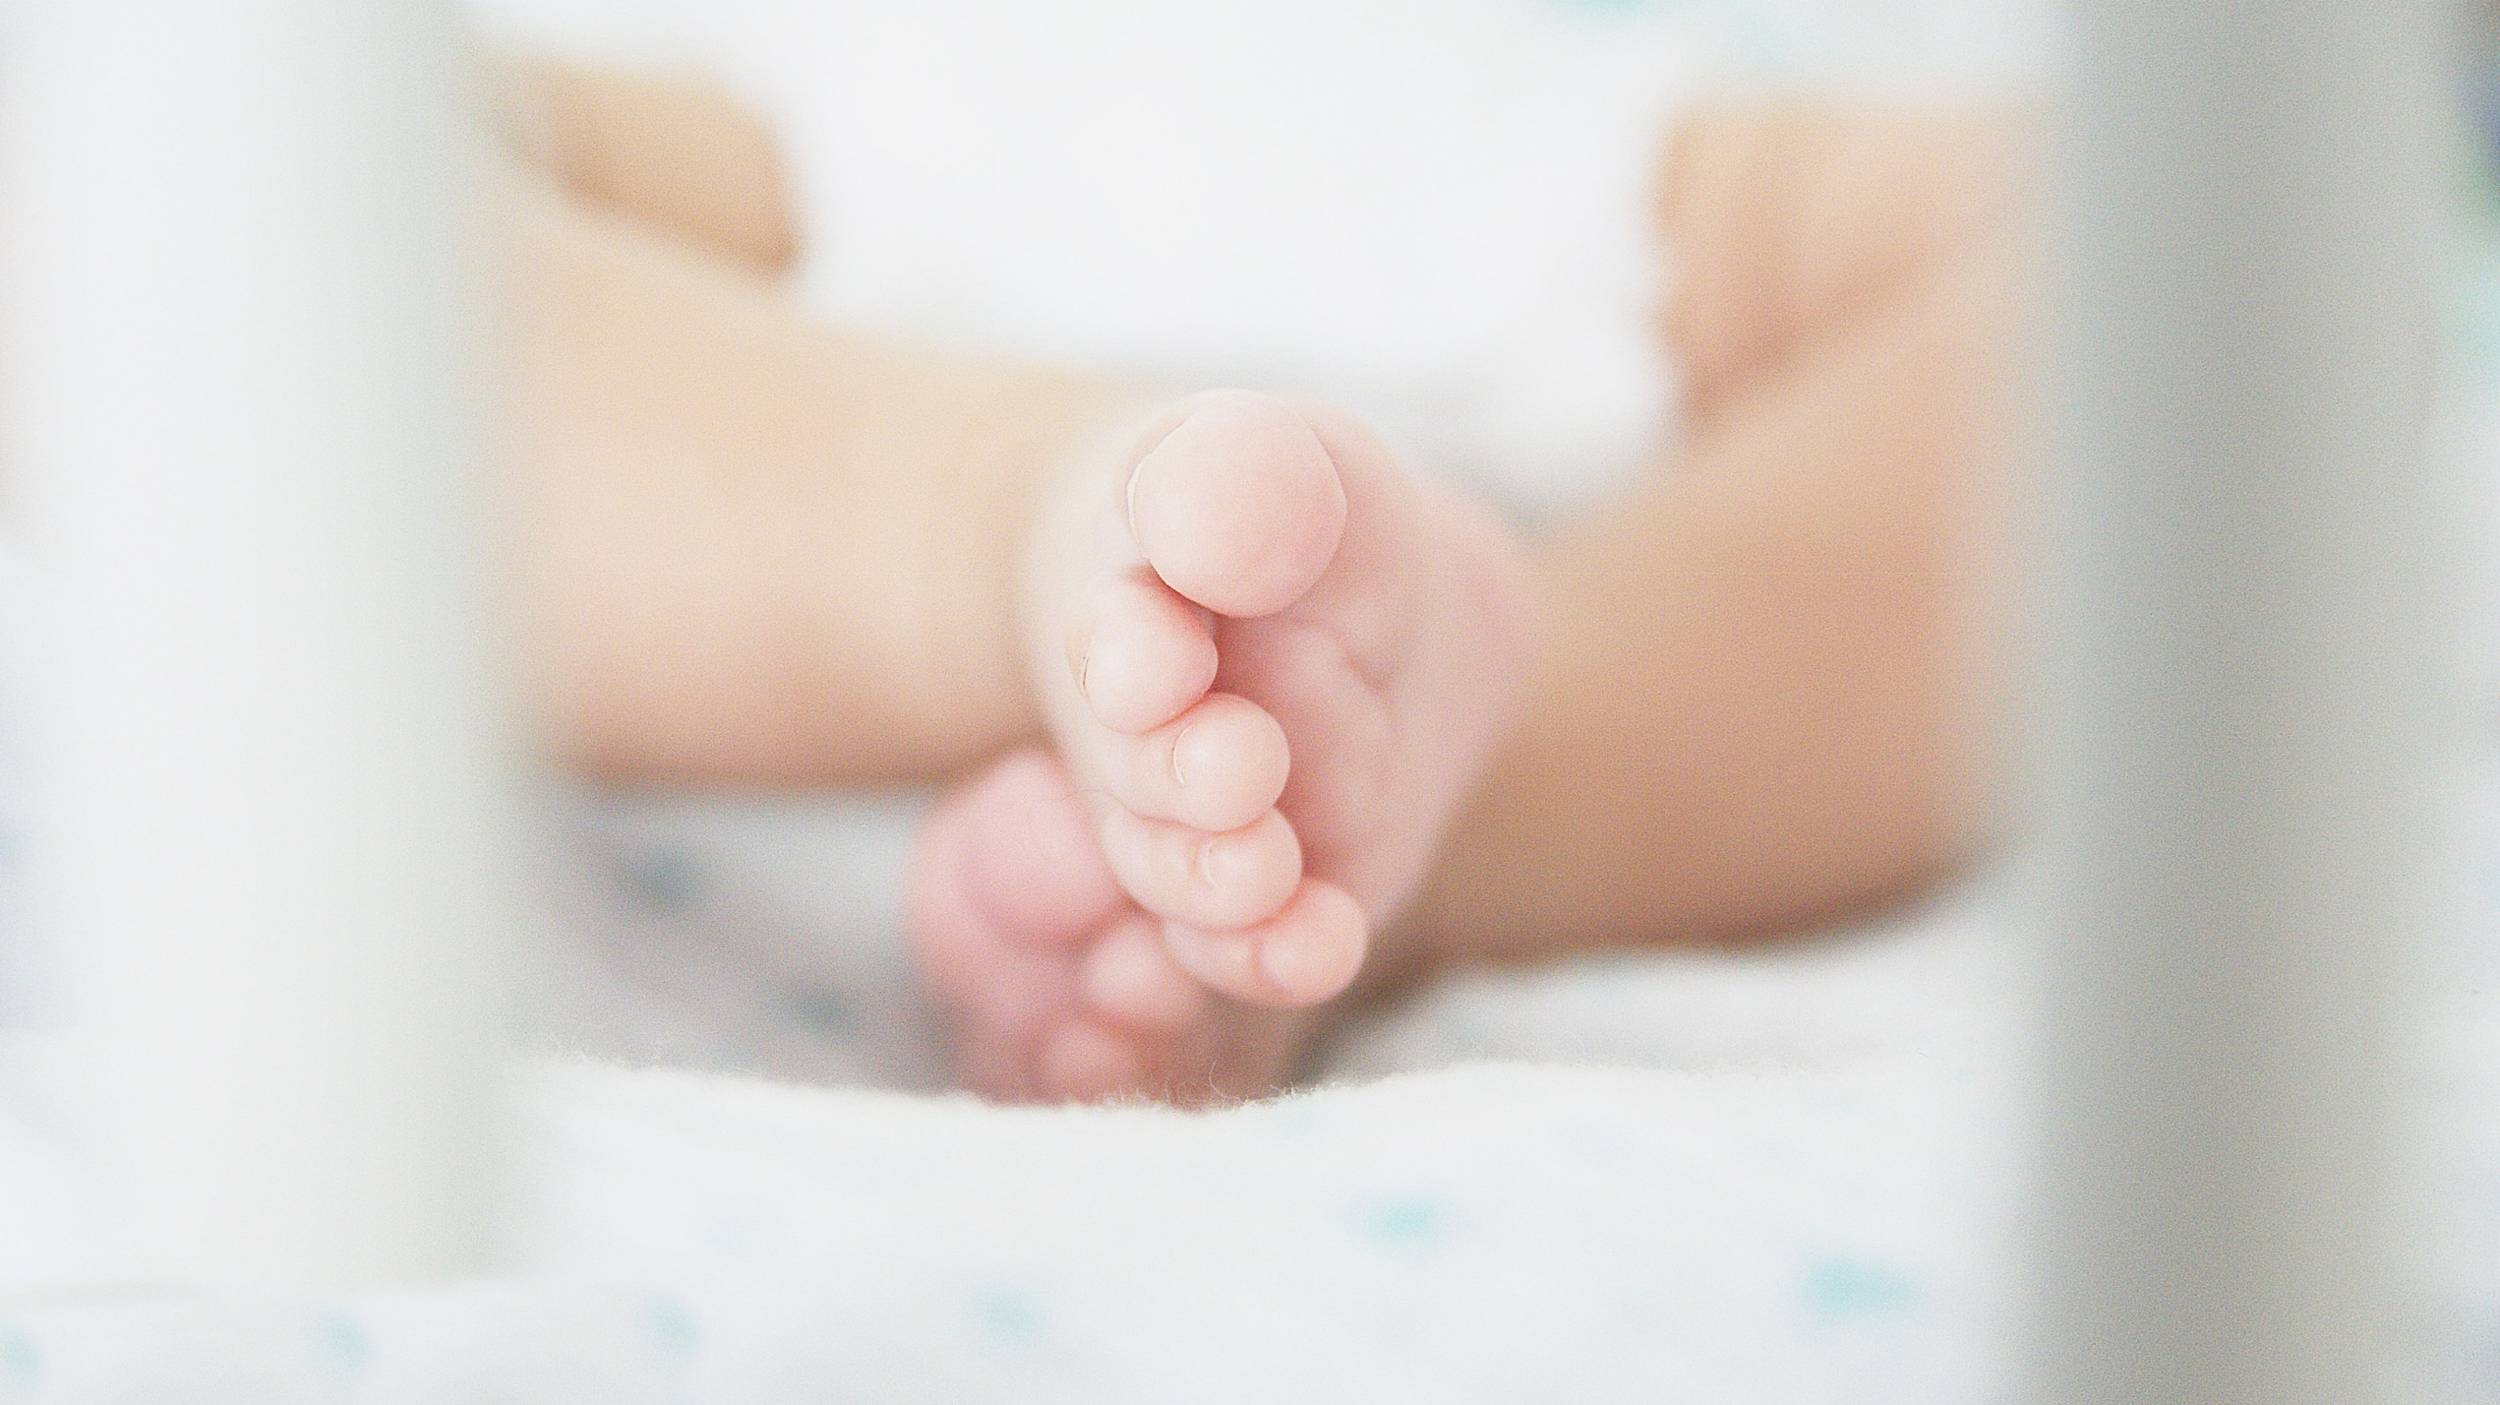 Happix-fotograaf-Nathalie-Joan-Veenendaal-Newborn-_-Baby-fotografie-069_jLwe_gSB-.jpg